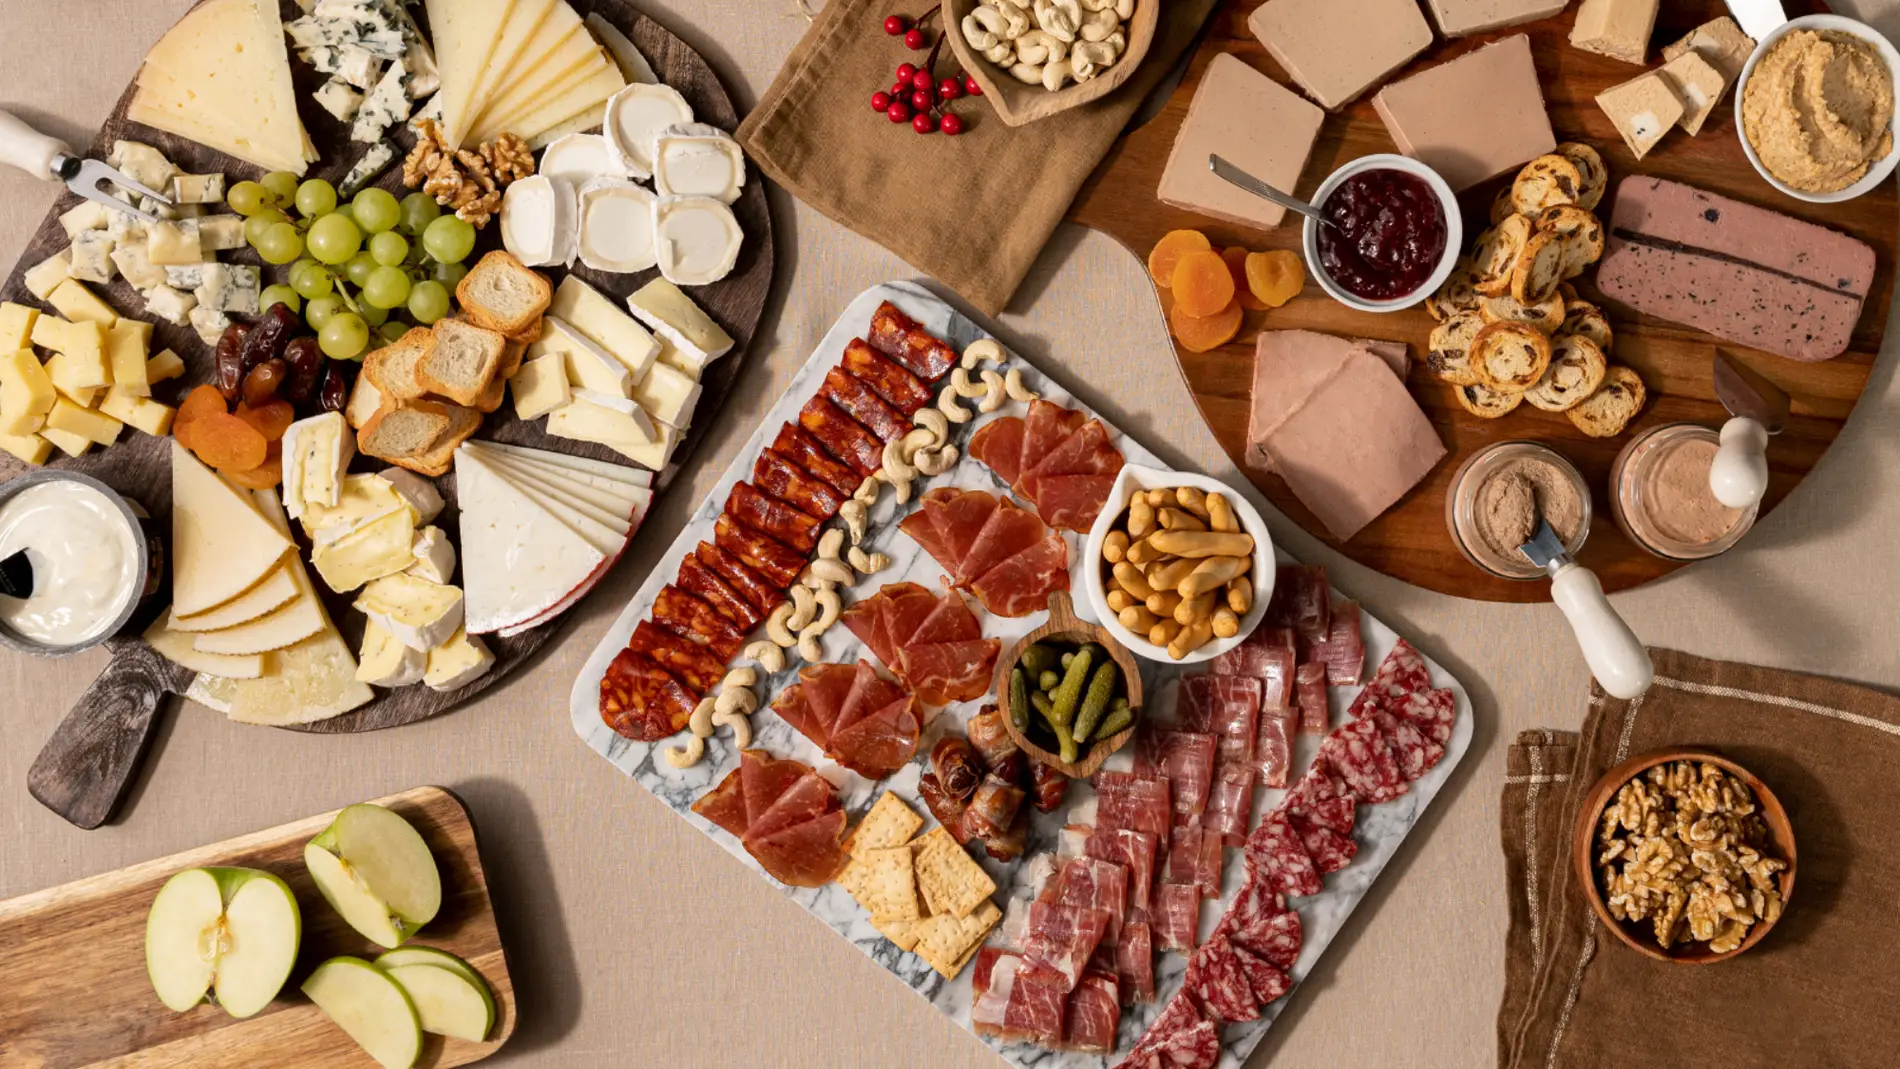 Sorprende a tus invitados con una tabla de quesos gourmet